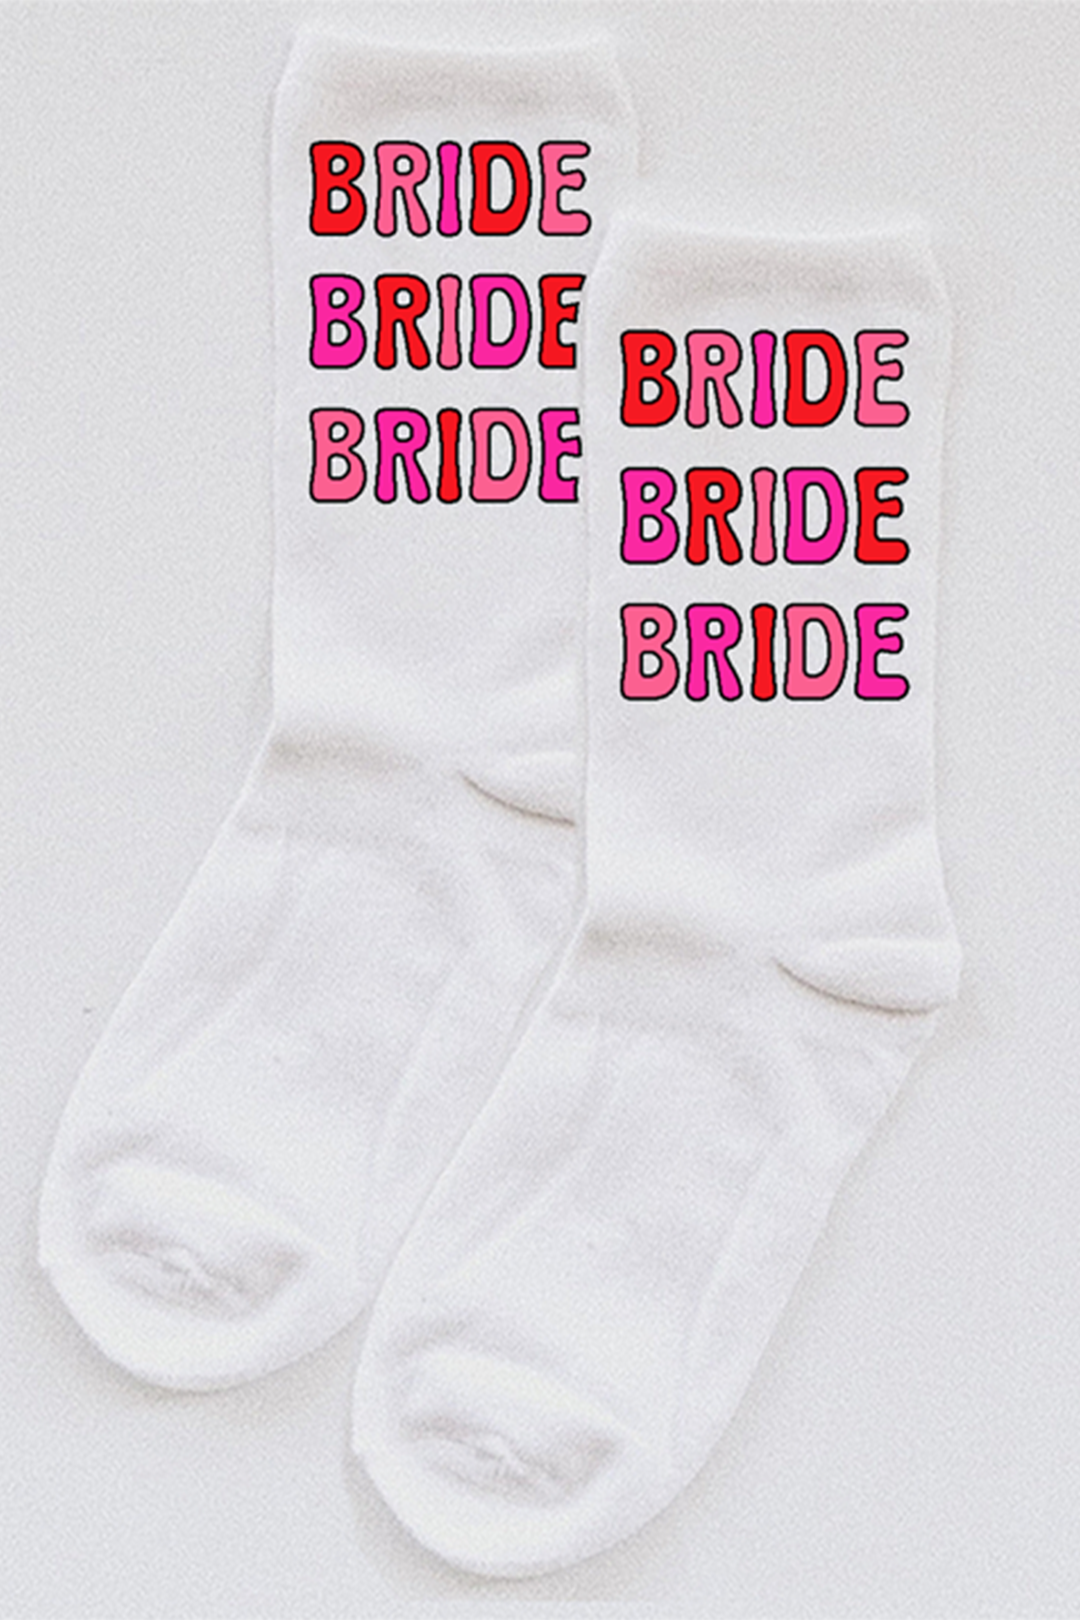 Bride Bubble Letter socks - choose your colors!